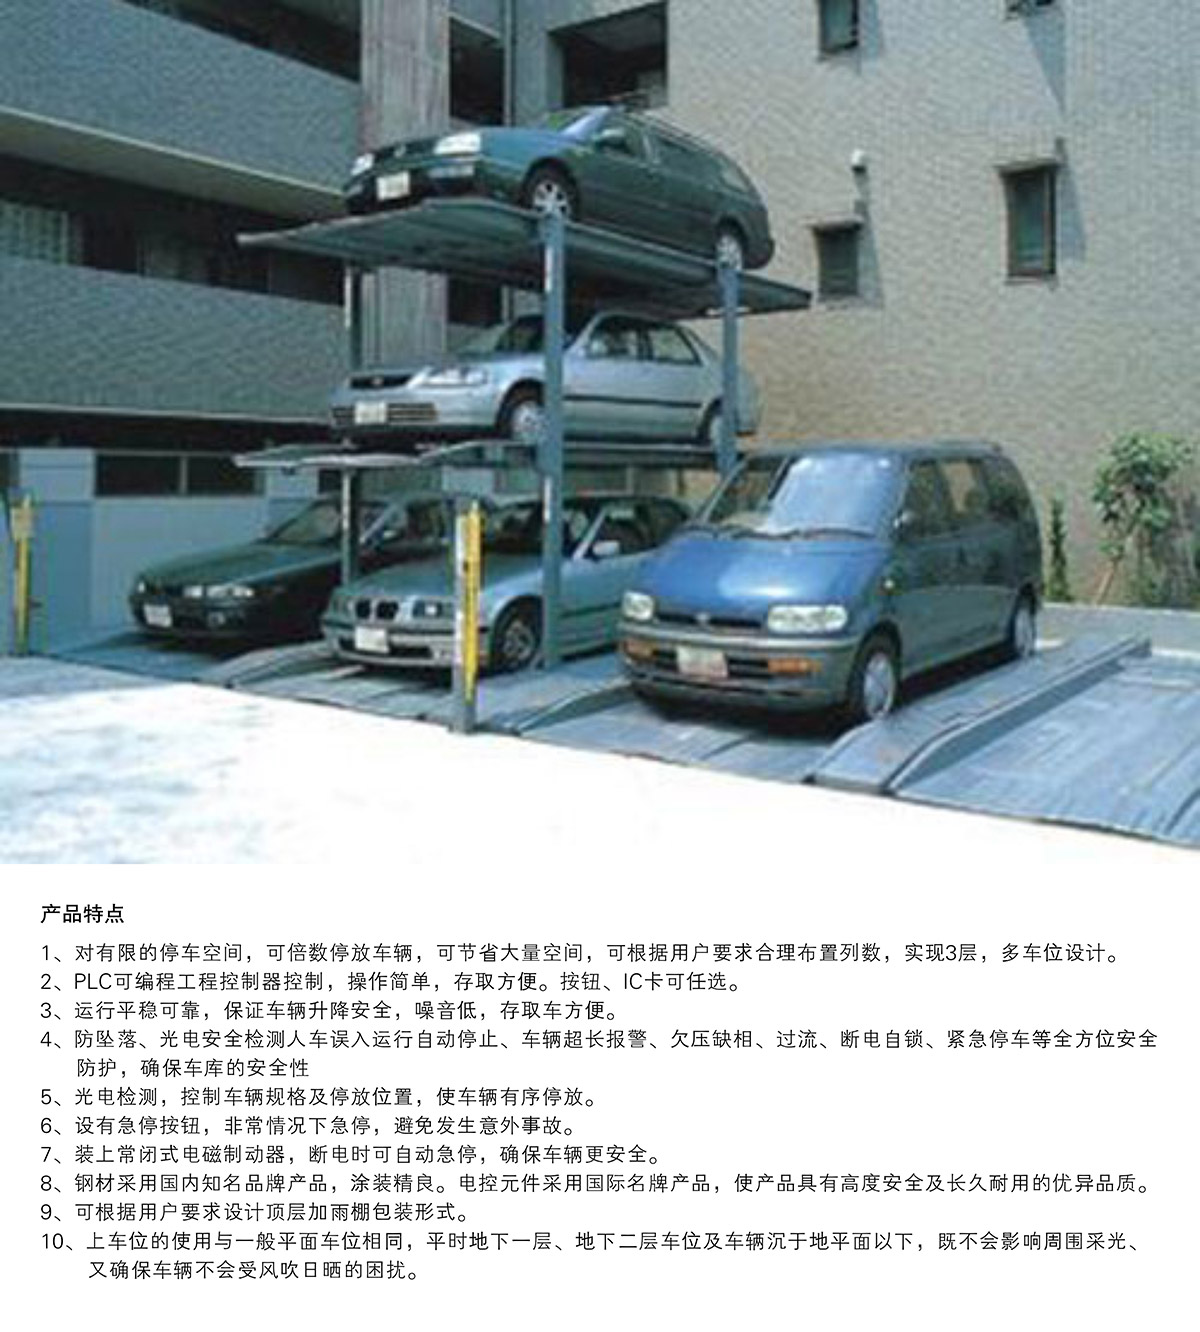 立体车位PJS3D2三层地坑简易升降停车设备产品特点.jpg